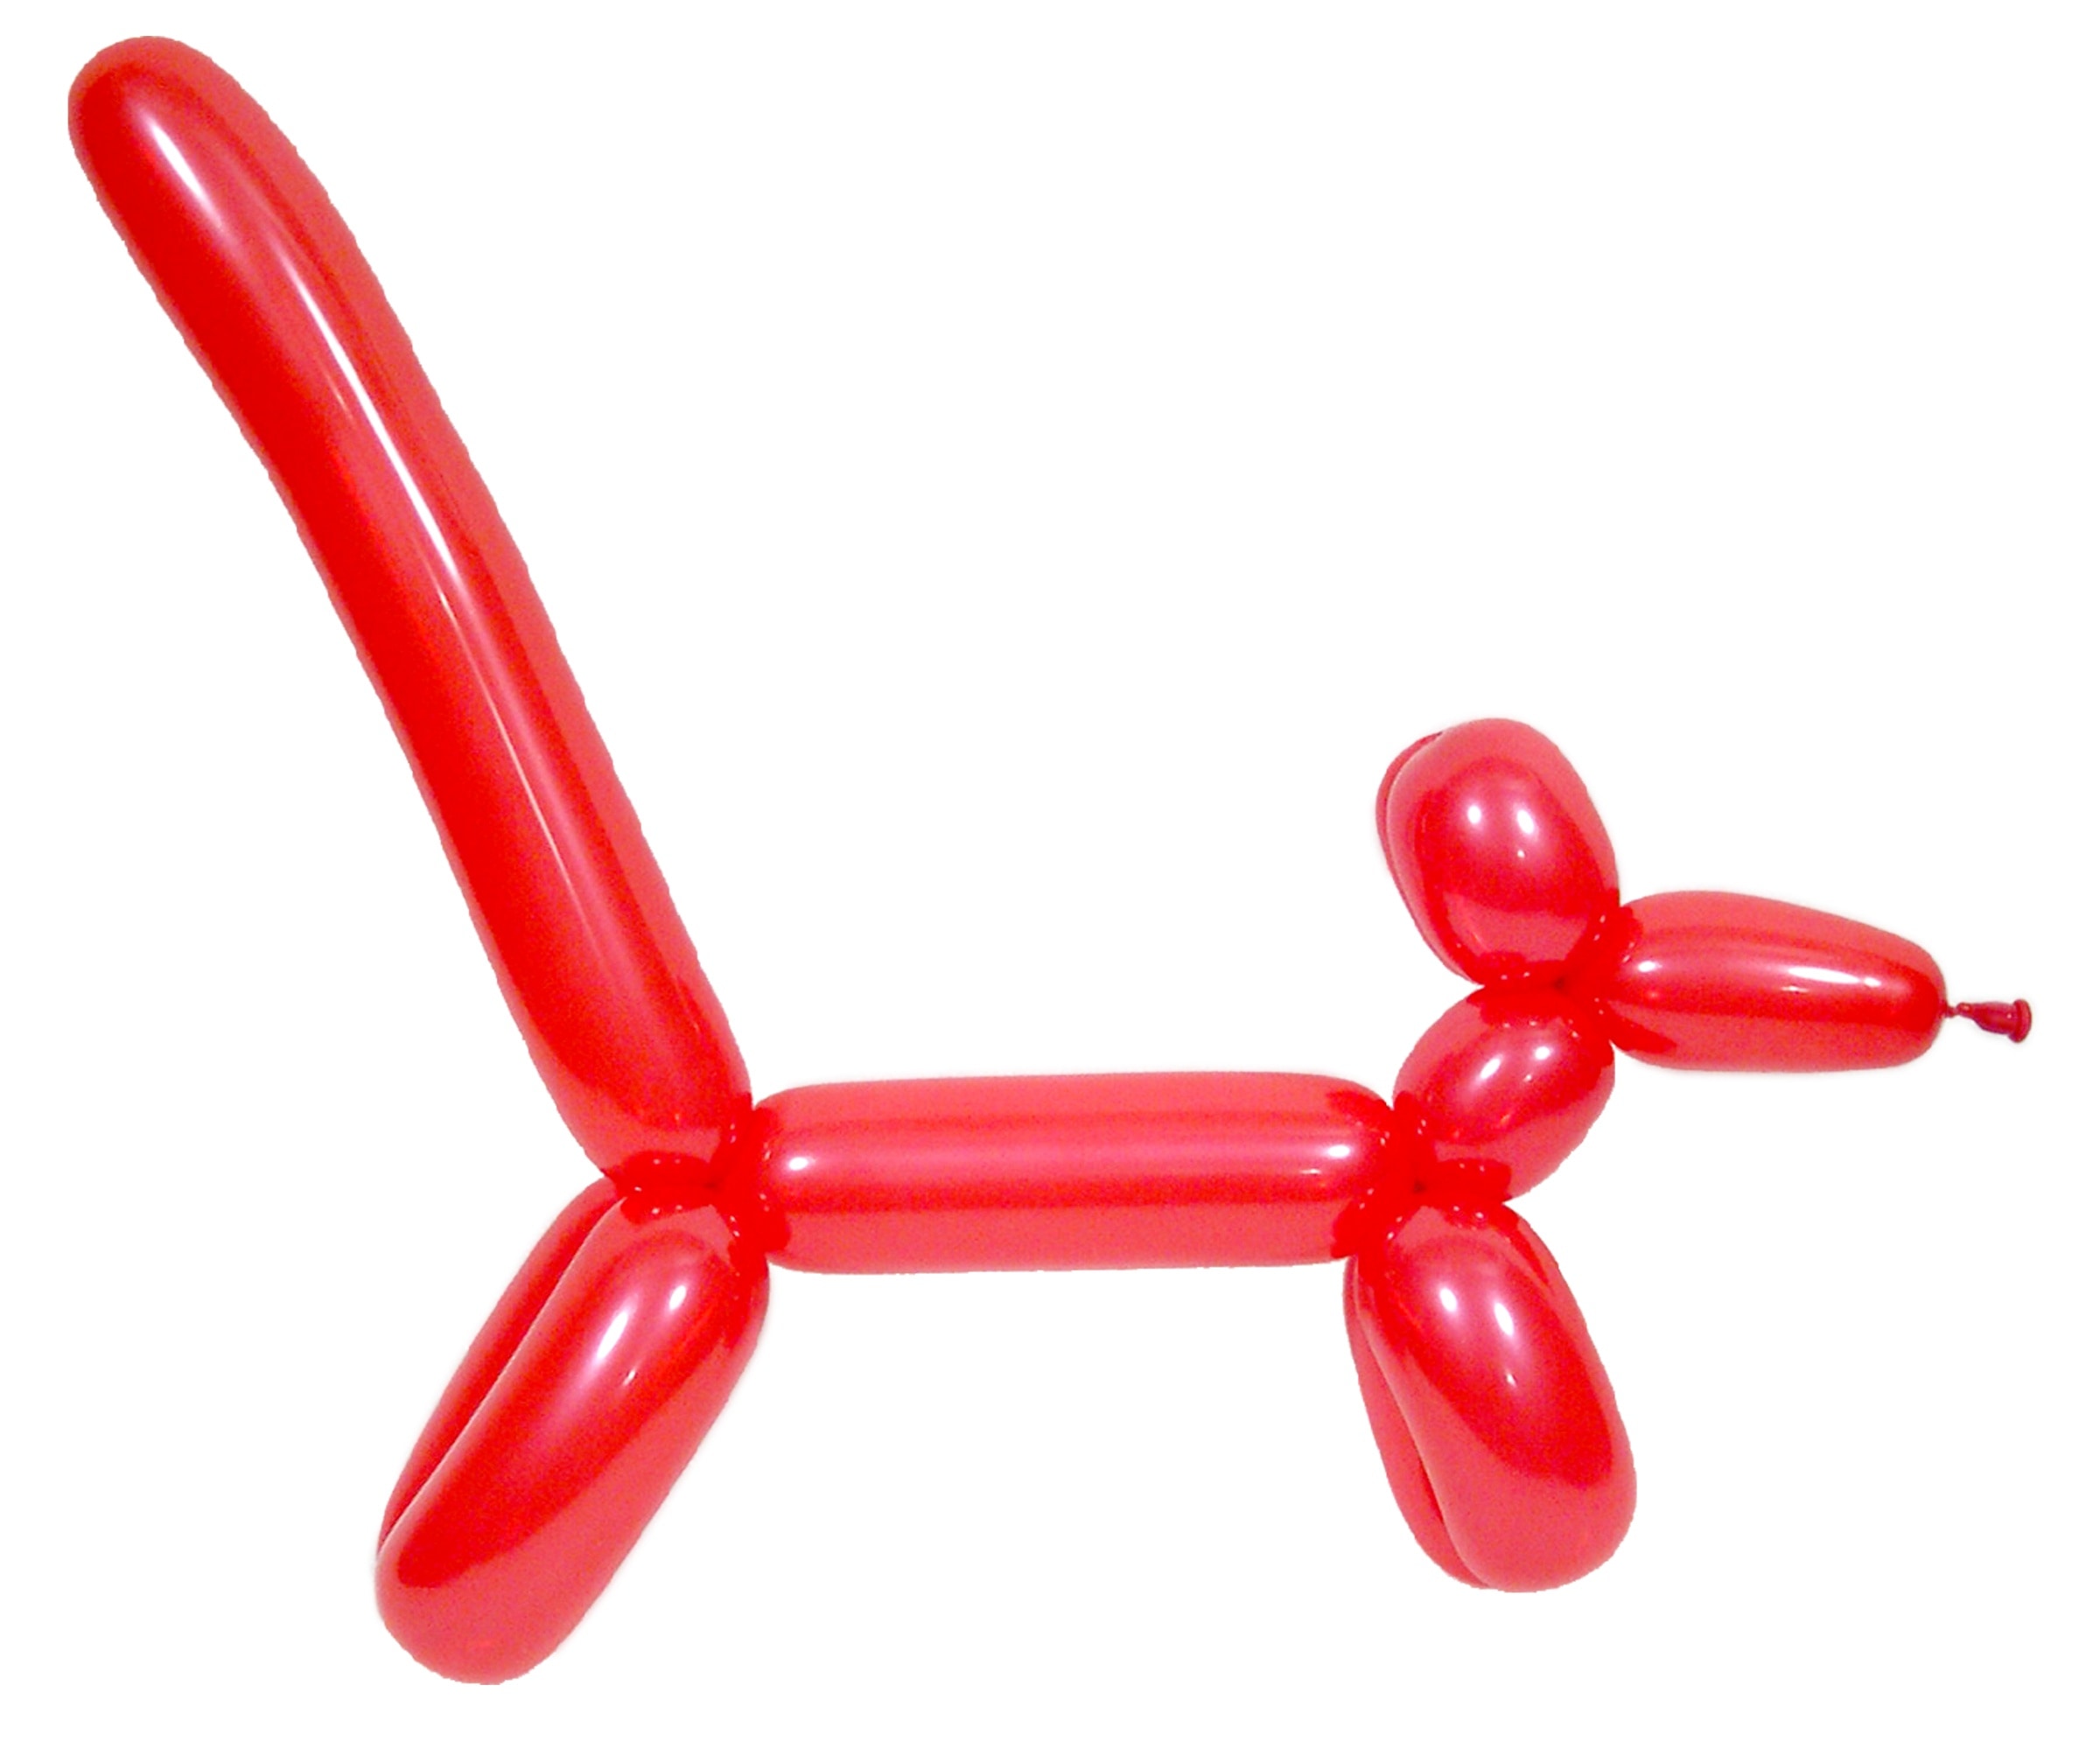 Dog, Sculpture, Fun, Balloon, Child, red, white background